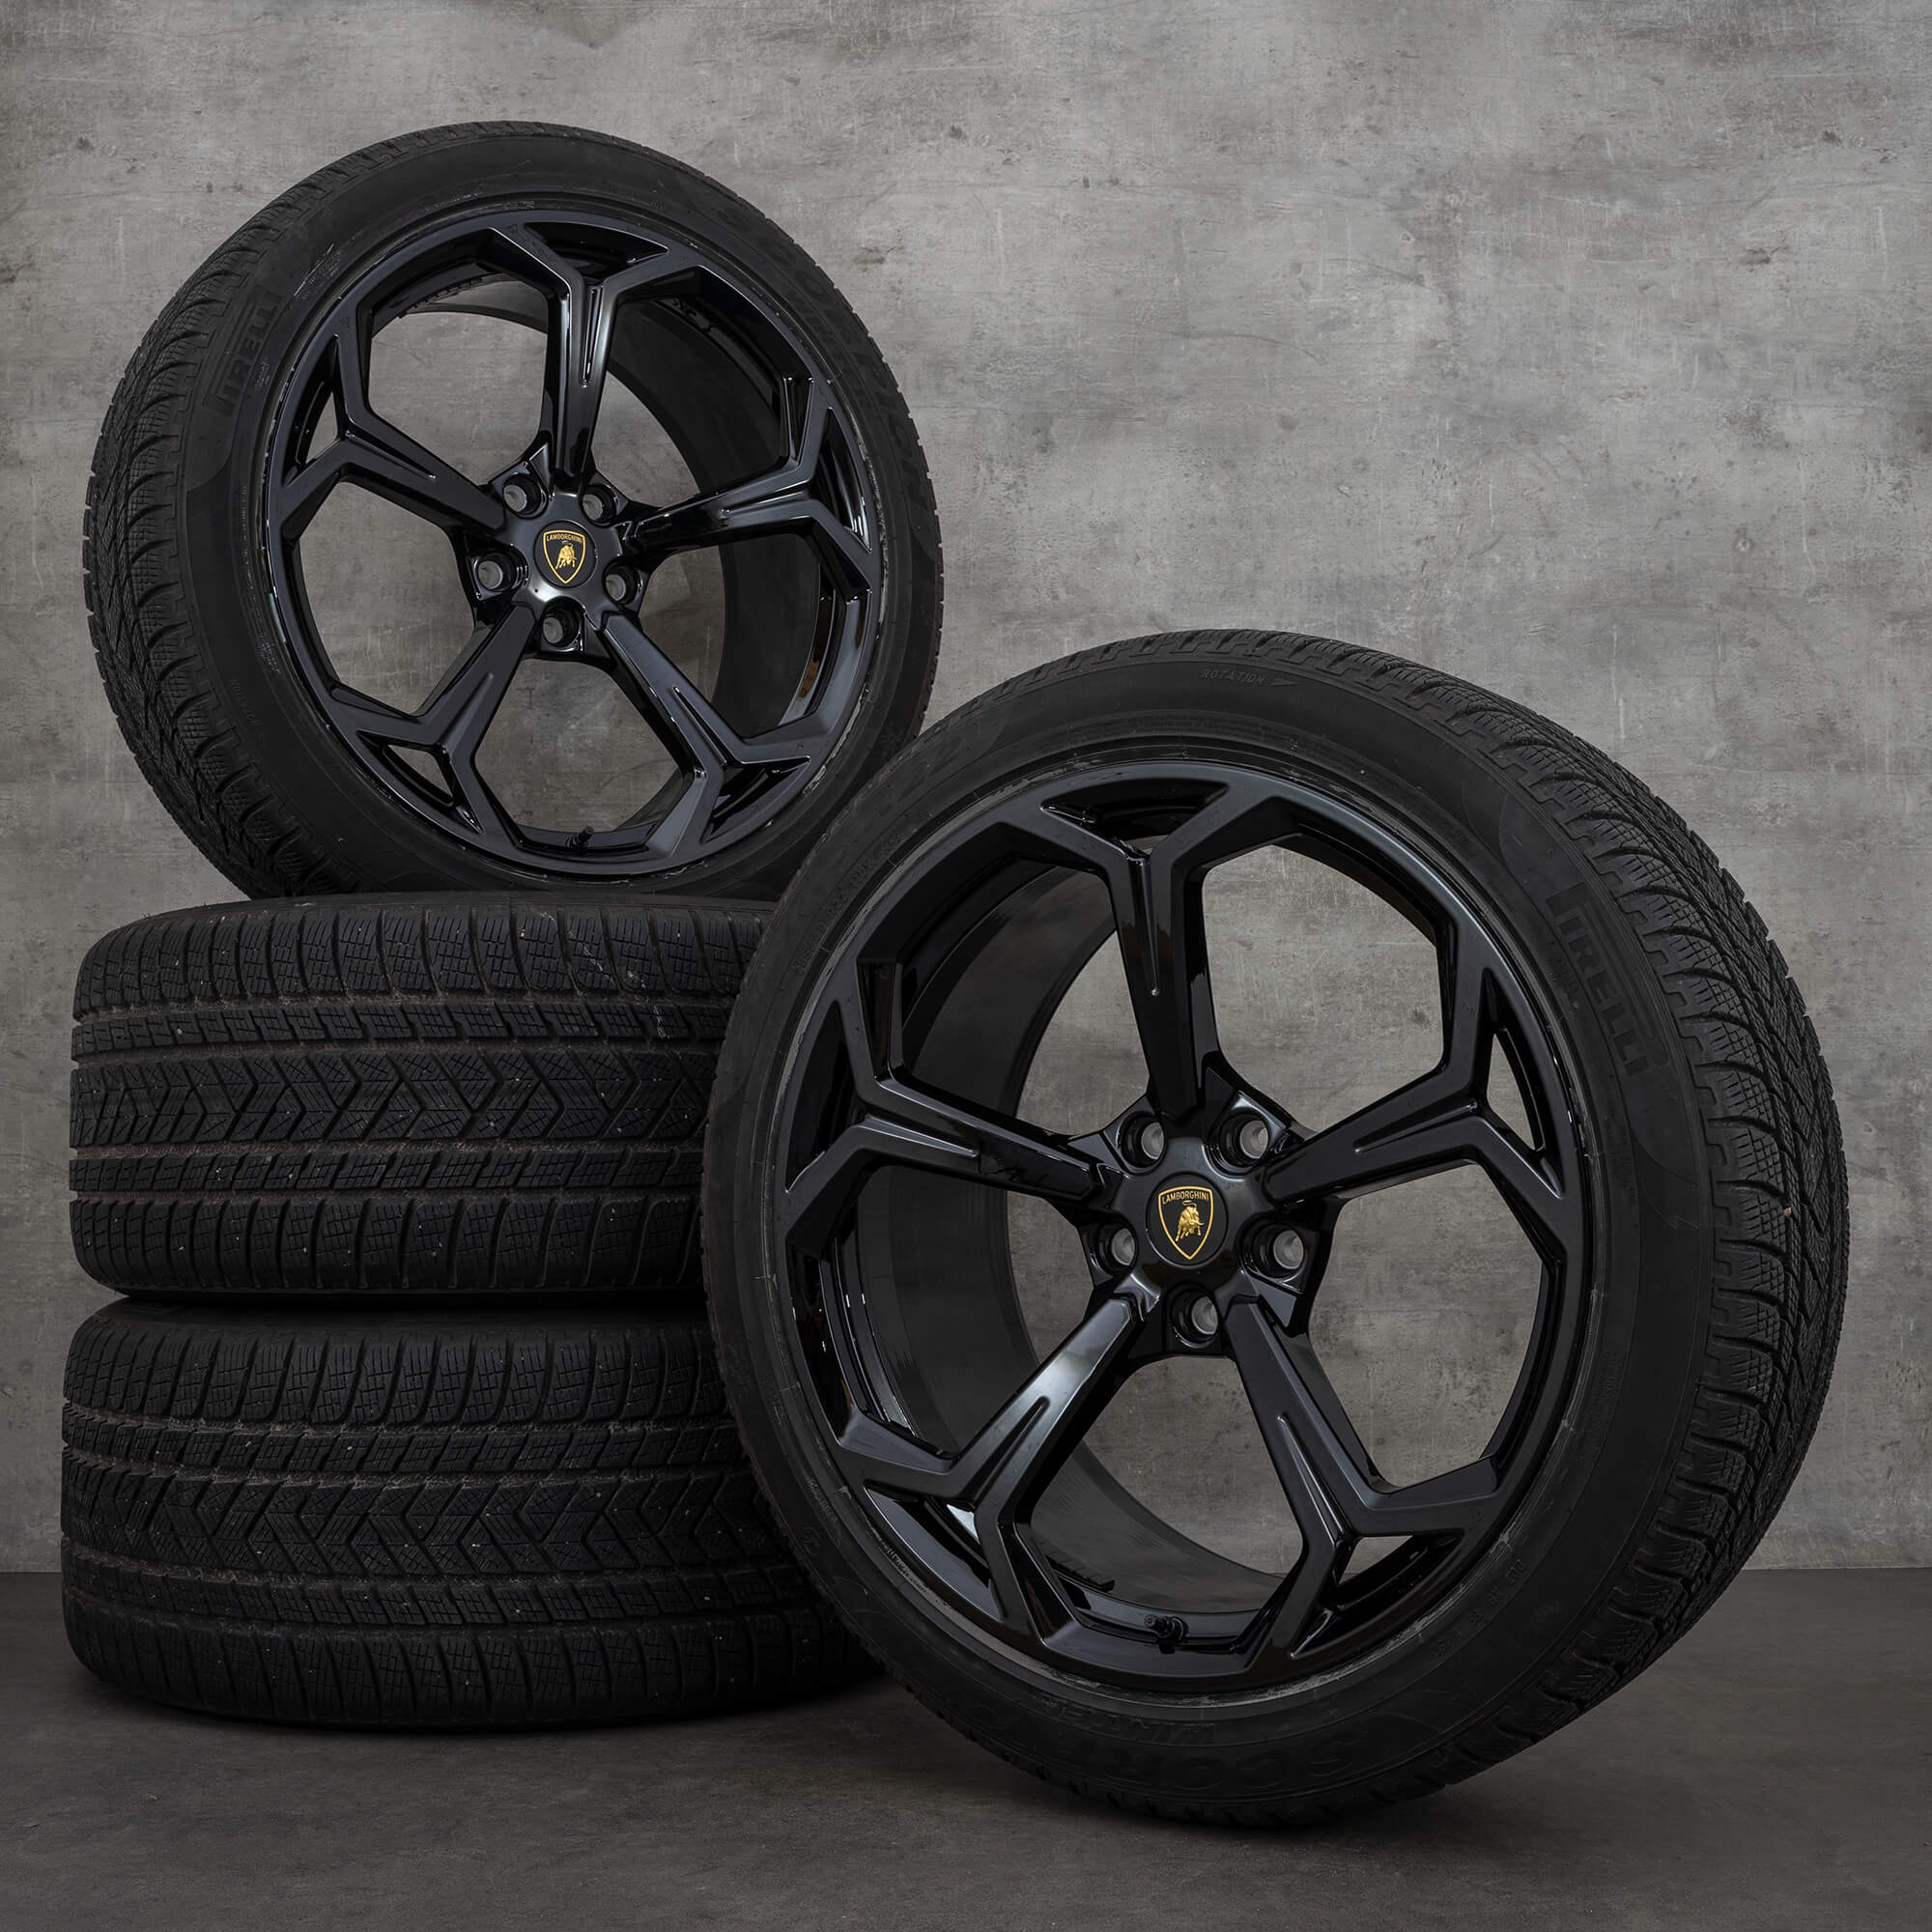 Quanto custa o pneu de uma Lamborghini? - Full Pneus